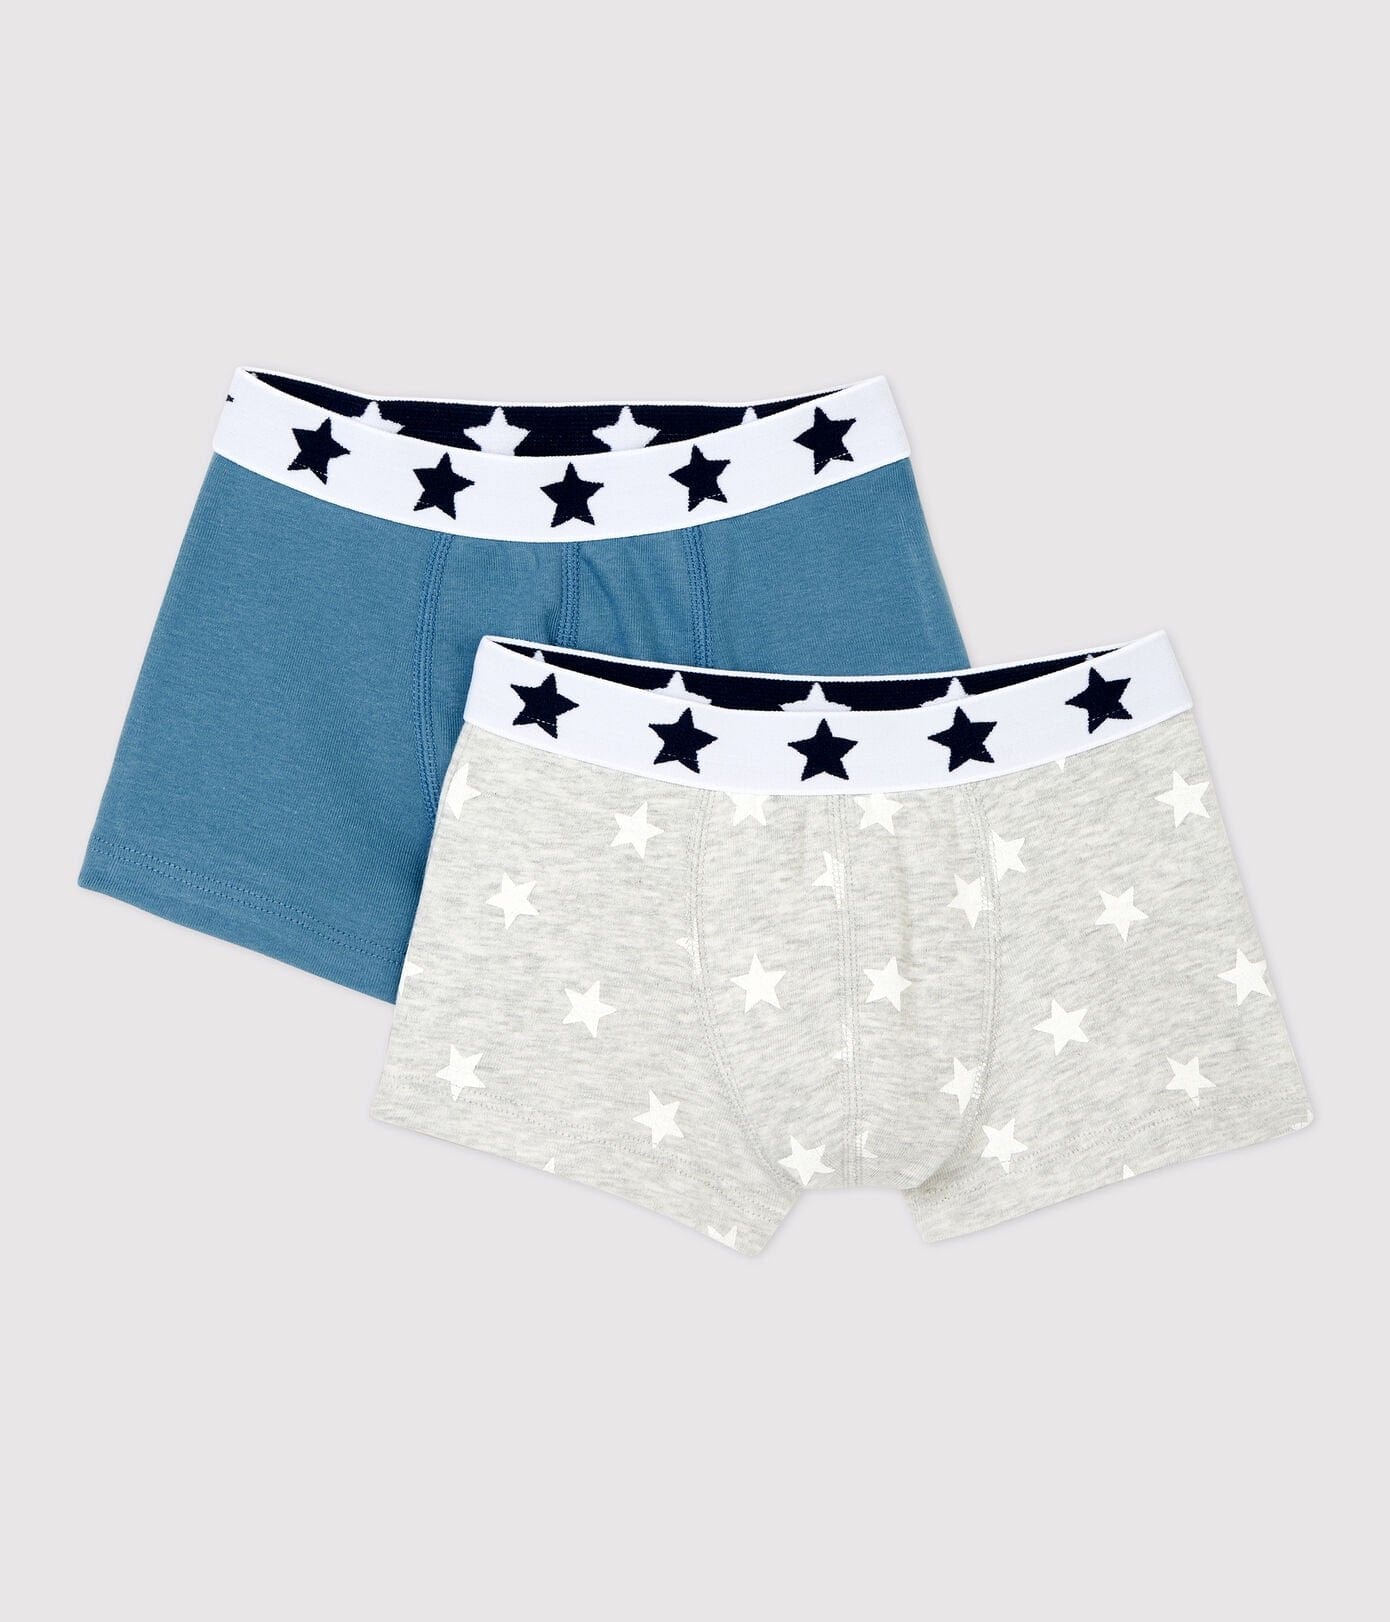 Petit Bateau Underwear Star Print Cotton Boxer Shorts - 2 Pack